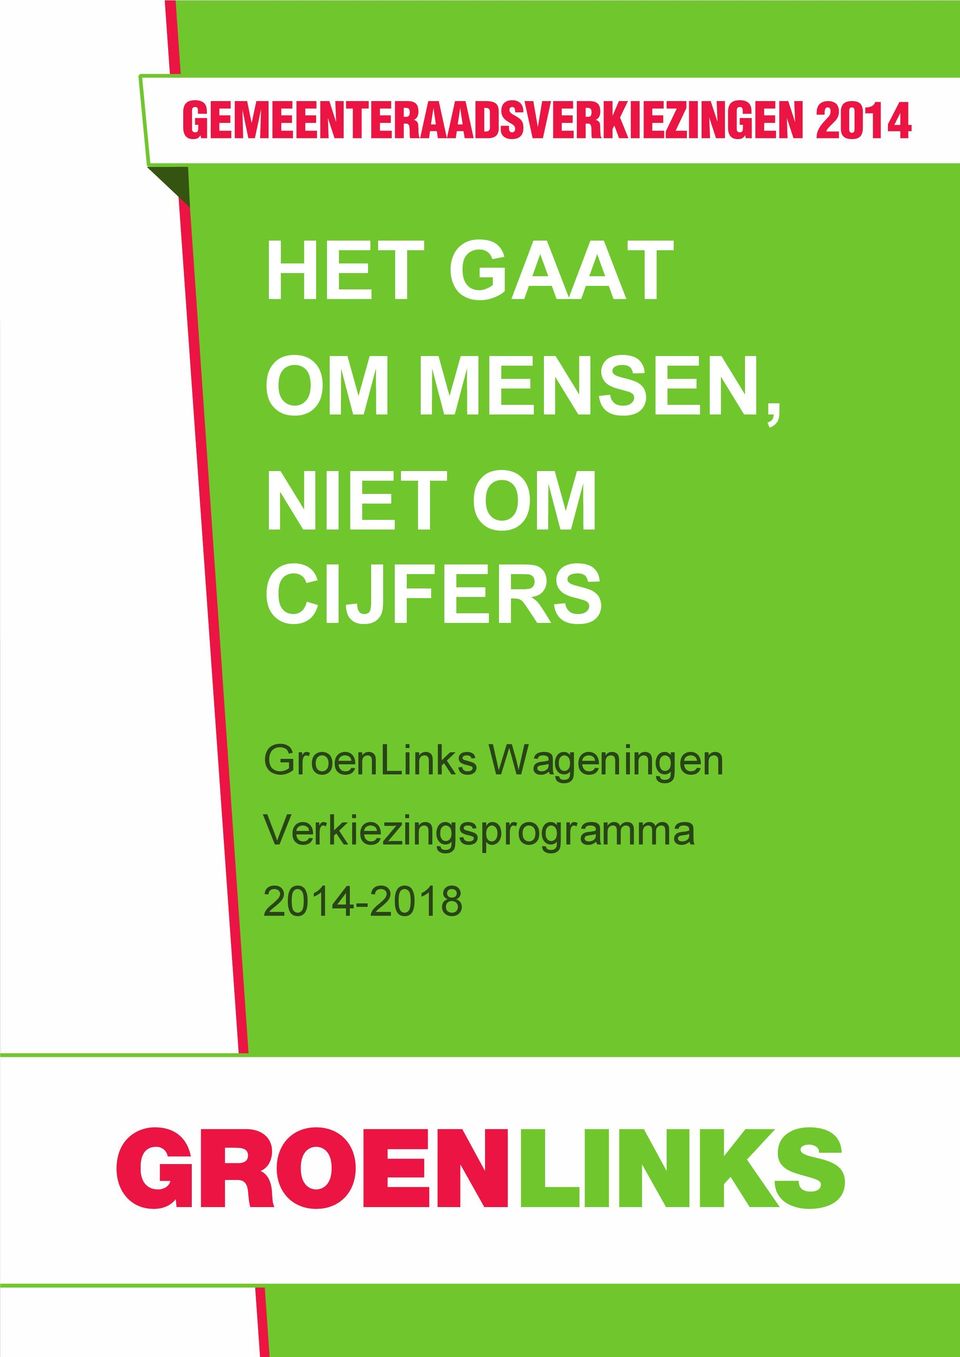 GroenLinks Wageningen